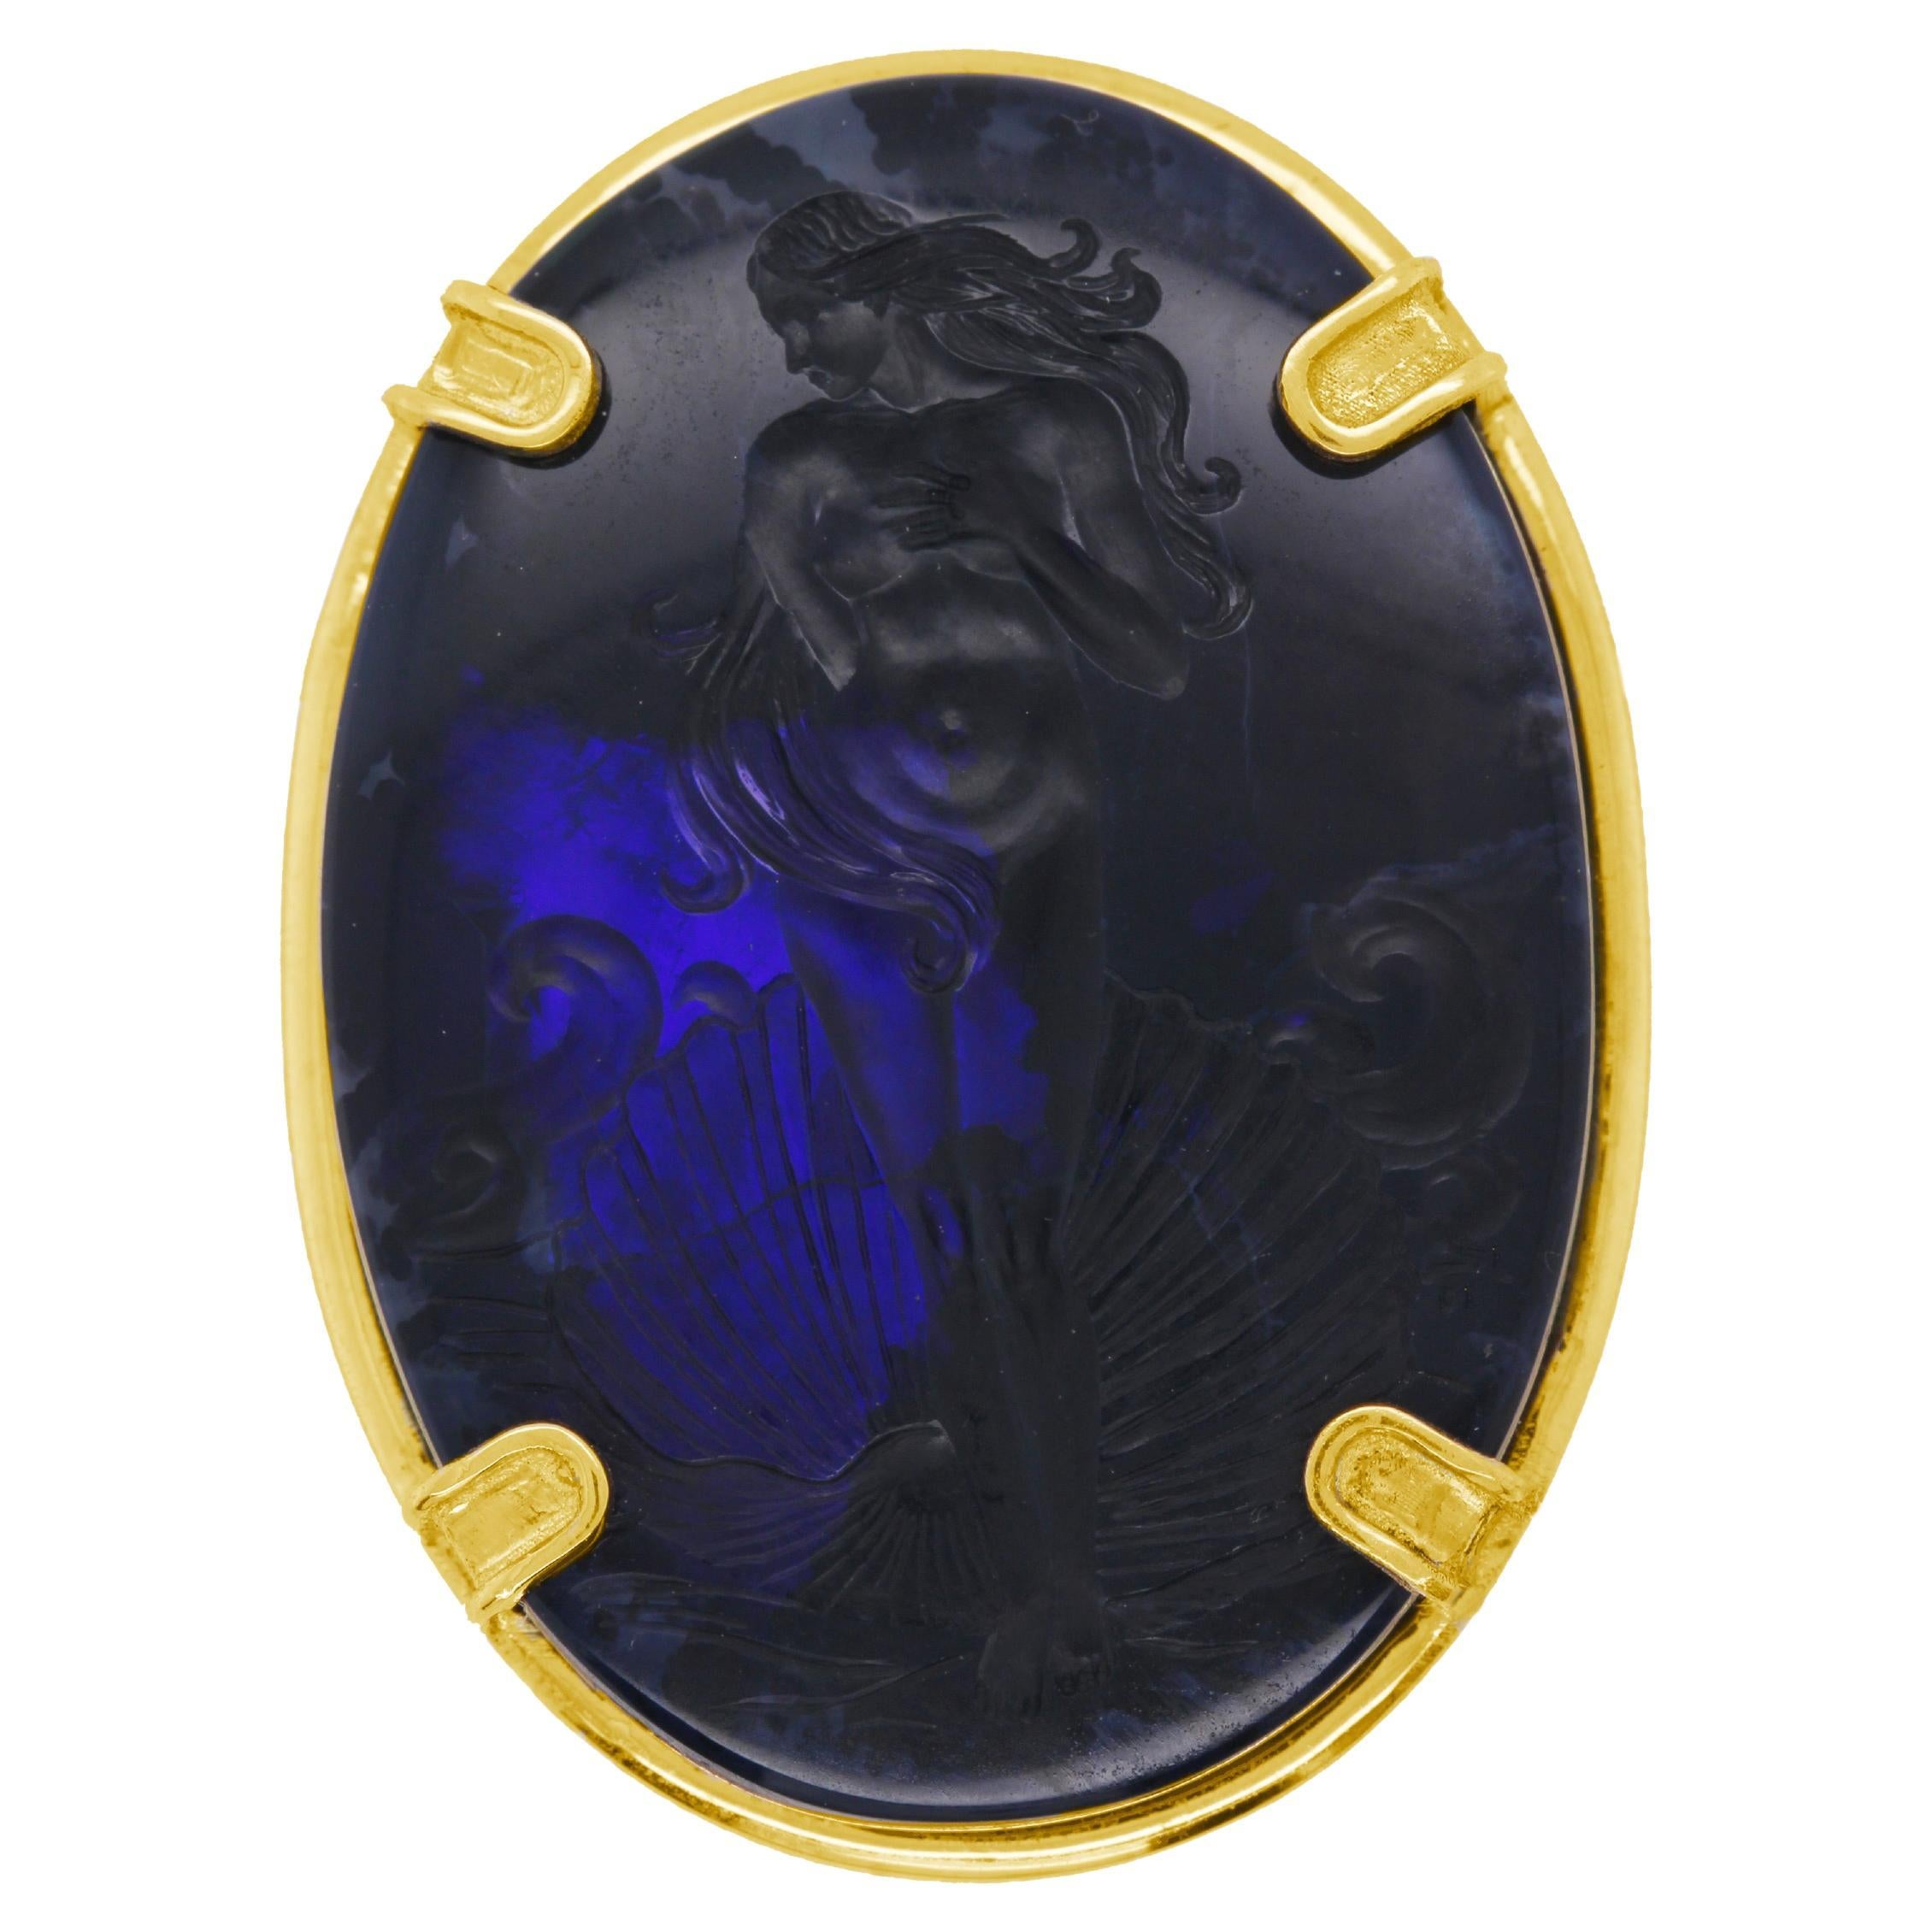 Castellani 42.06ct Black Opal Venus Hand Carved Intaglio 18kt Gold Brooch For Sale